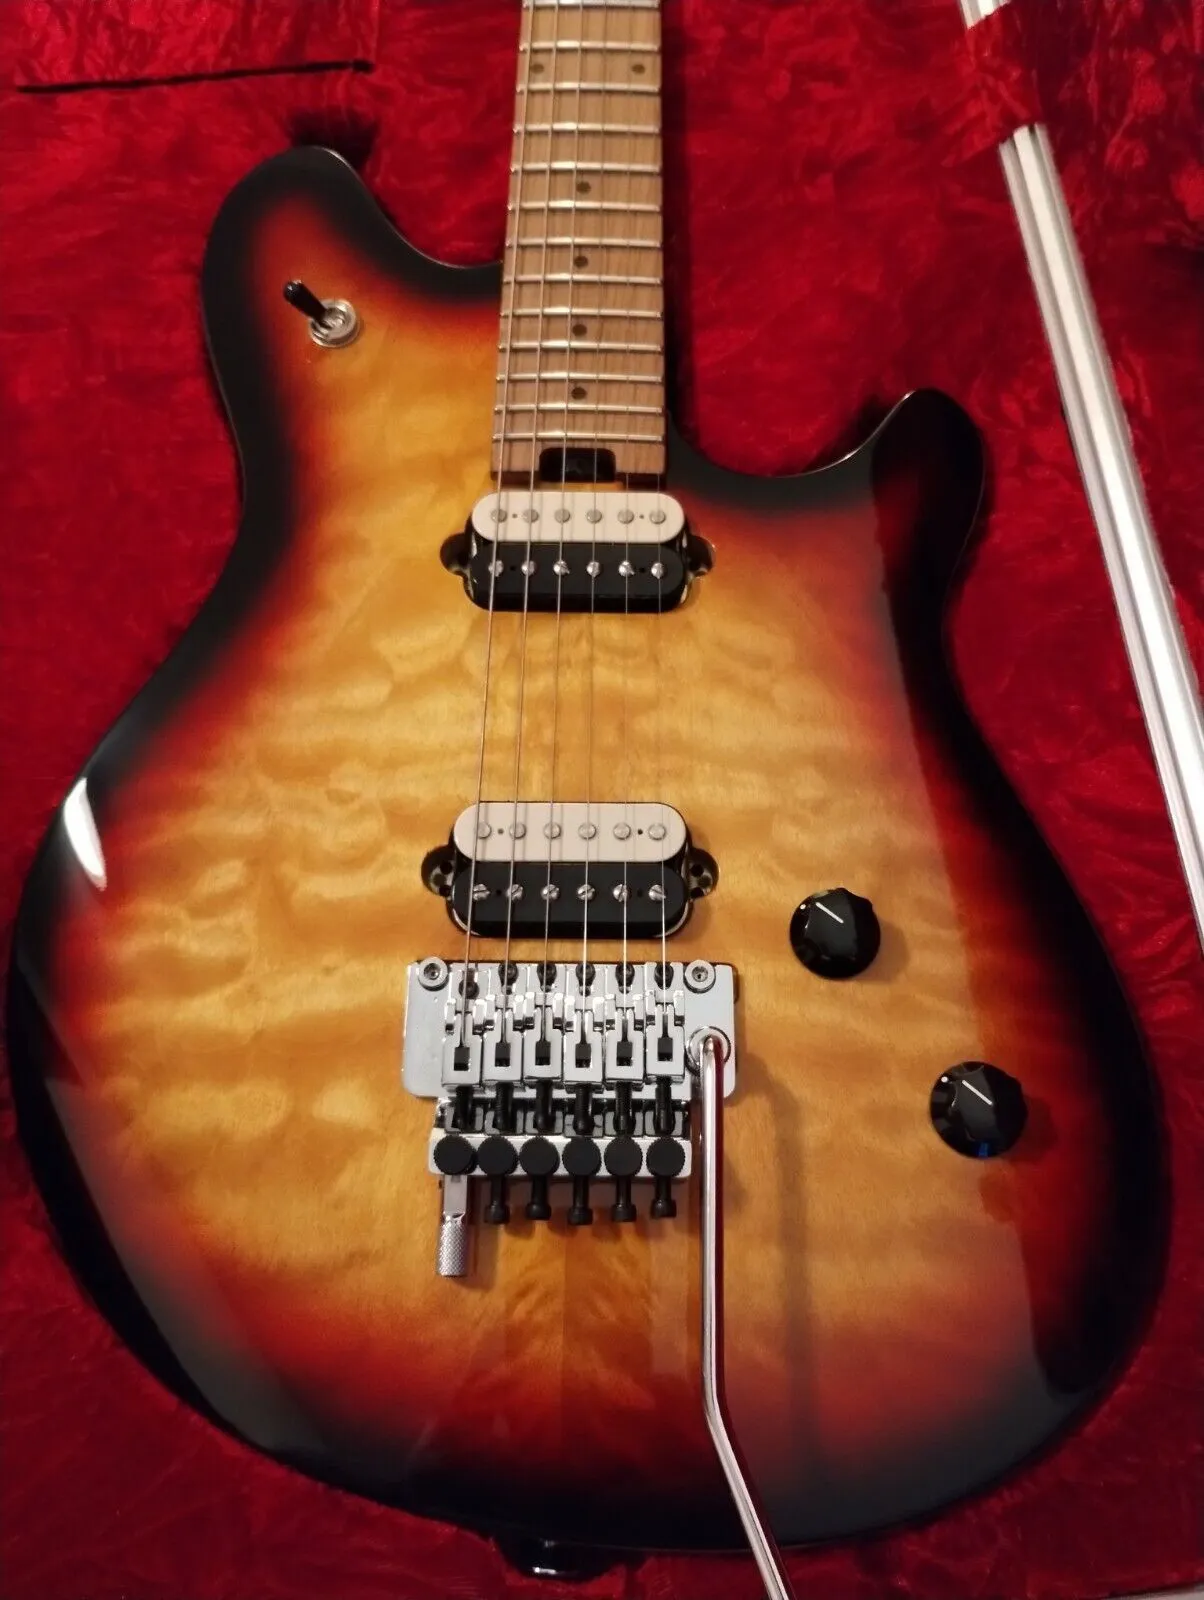 Guitarra Sunburst padrão de 3 tons como a mesma das fotos guitarra elétrica